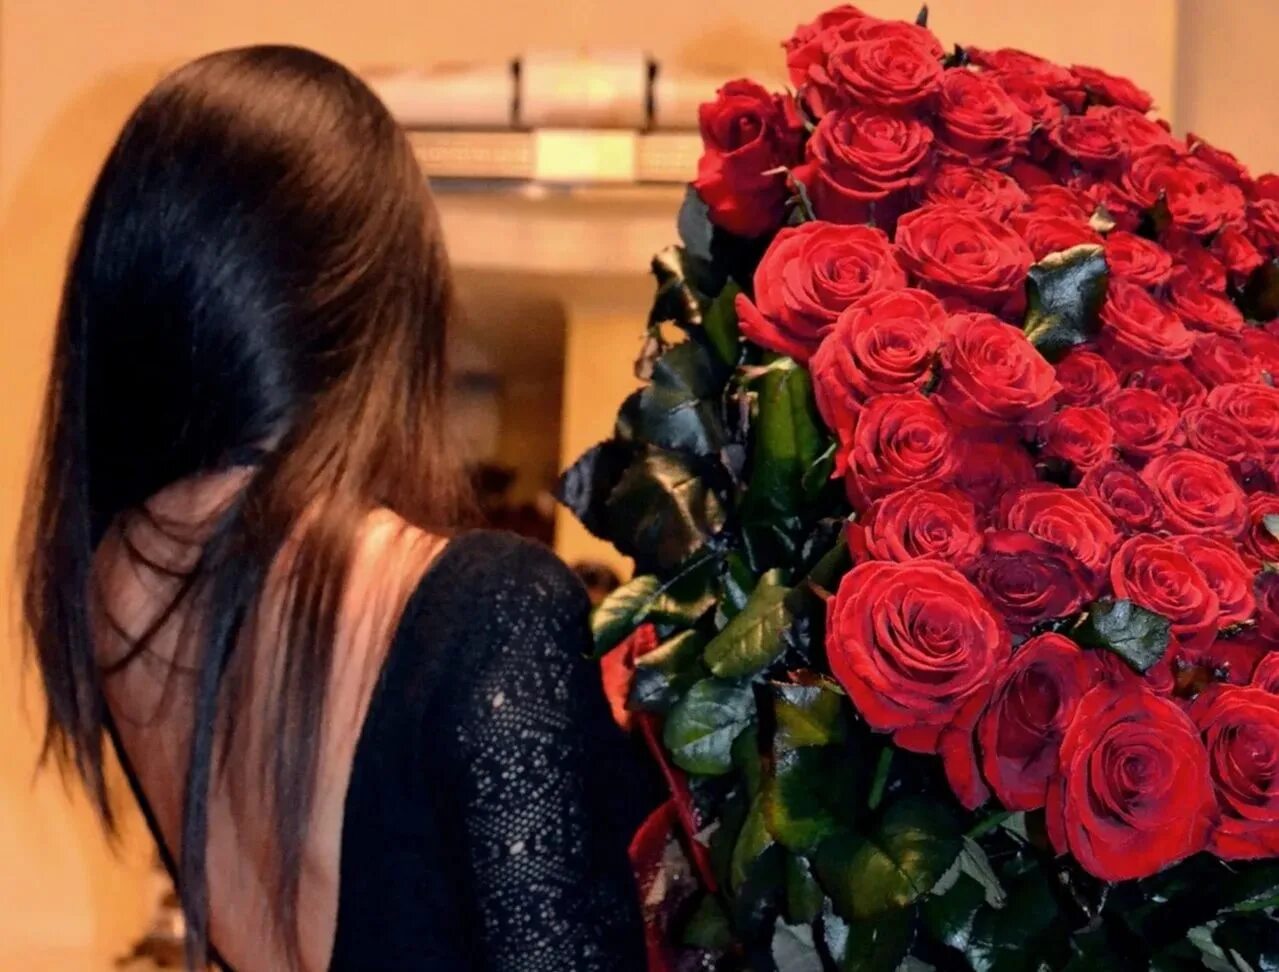 Фото брюнеток с цветами. Девушка с букетом роз. Букет цветов для девушки. Девушка с большим букетом цветов. Брюнетка с букетом роз.